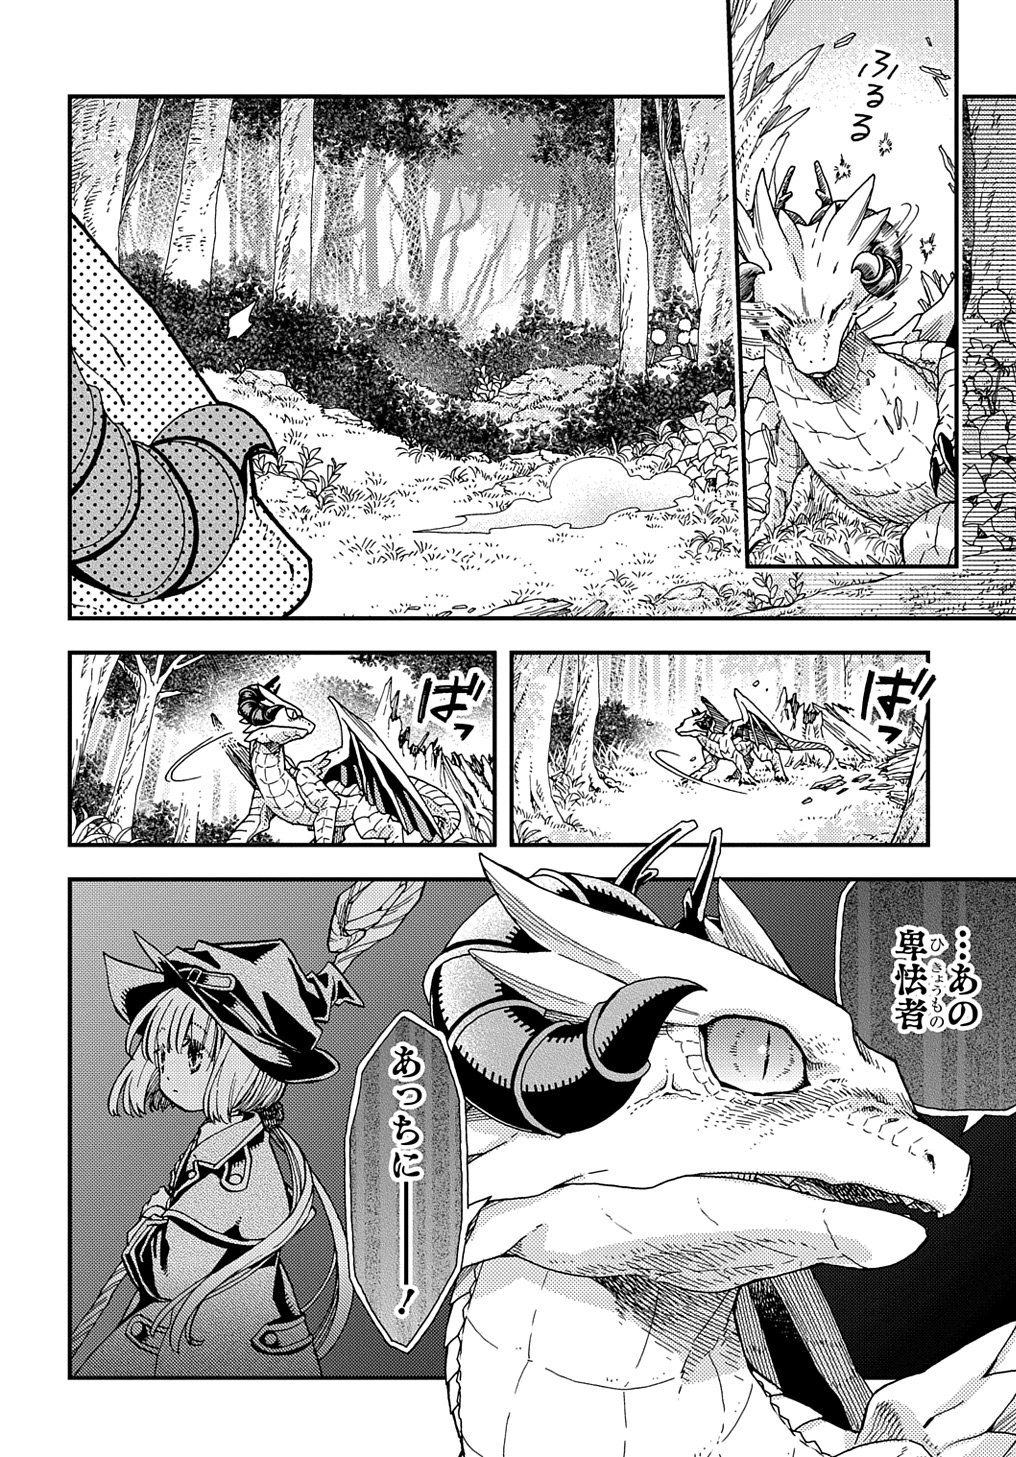 Hone Dragon no Mana Musume - Chapter 31 - Page 12